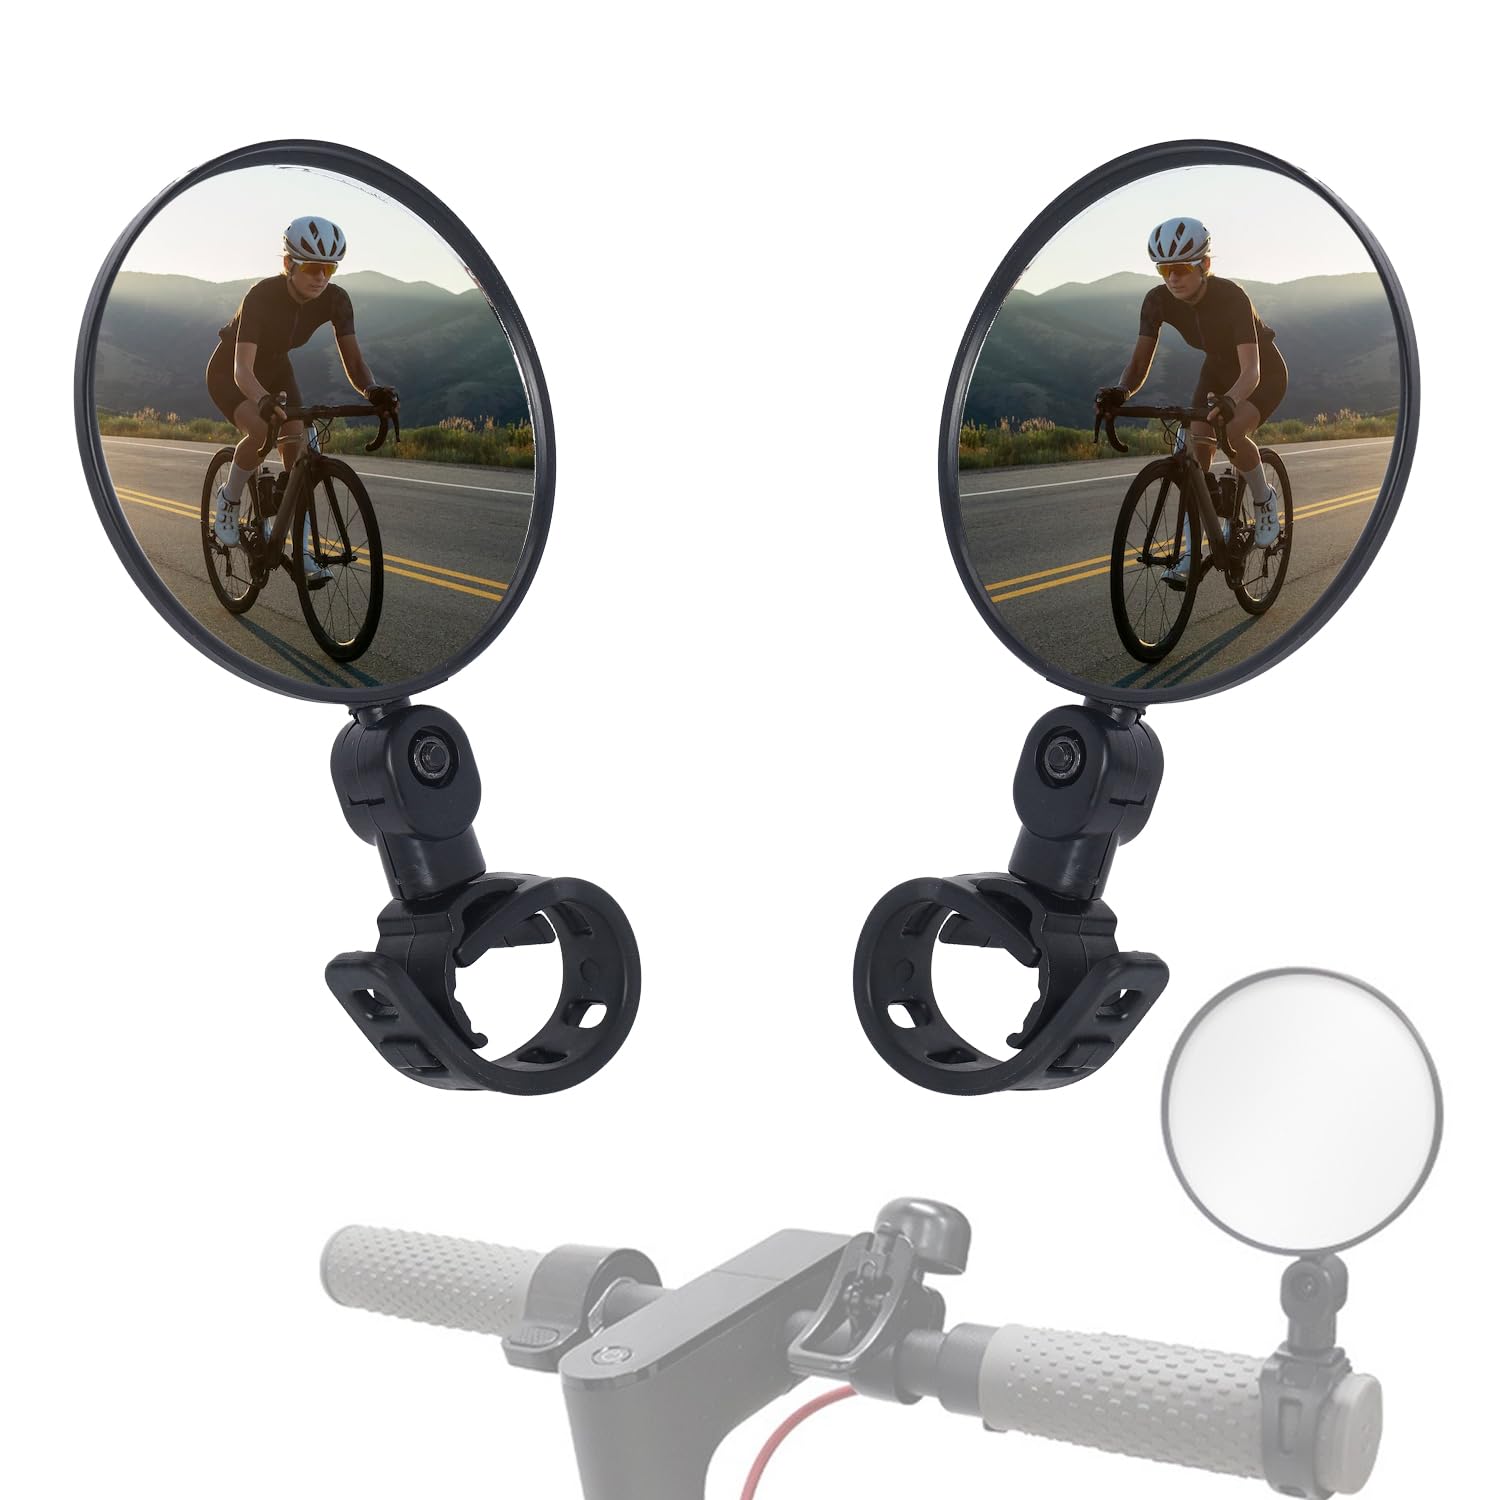 Fahrradspiegel Sicherer Rückspiegel 2 Stück 360°Drehbar Konvexspiegel Klappbar Radfahren Rückspiegel Lenker Spiegel für Fahrrad, Mountainbikes, Rennräder von SANOU